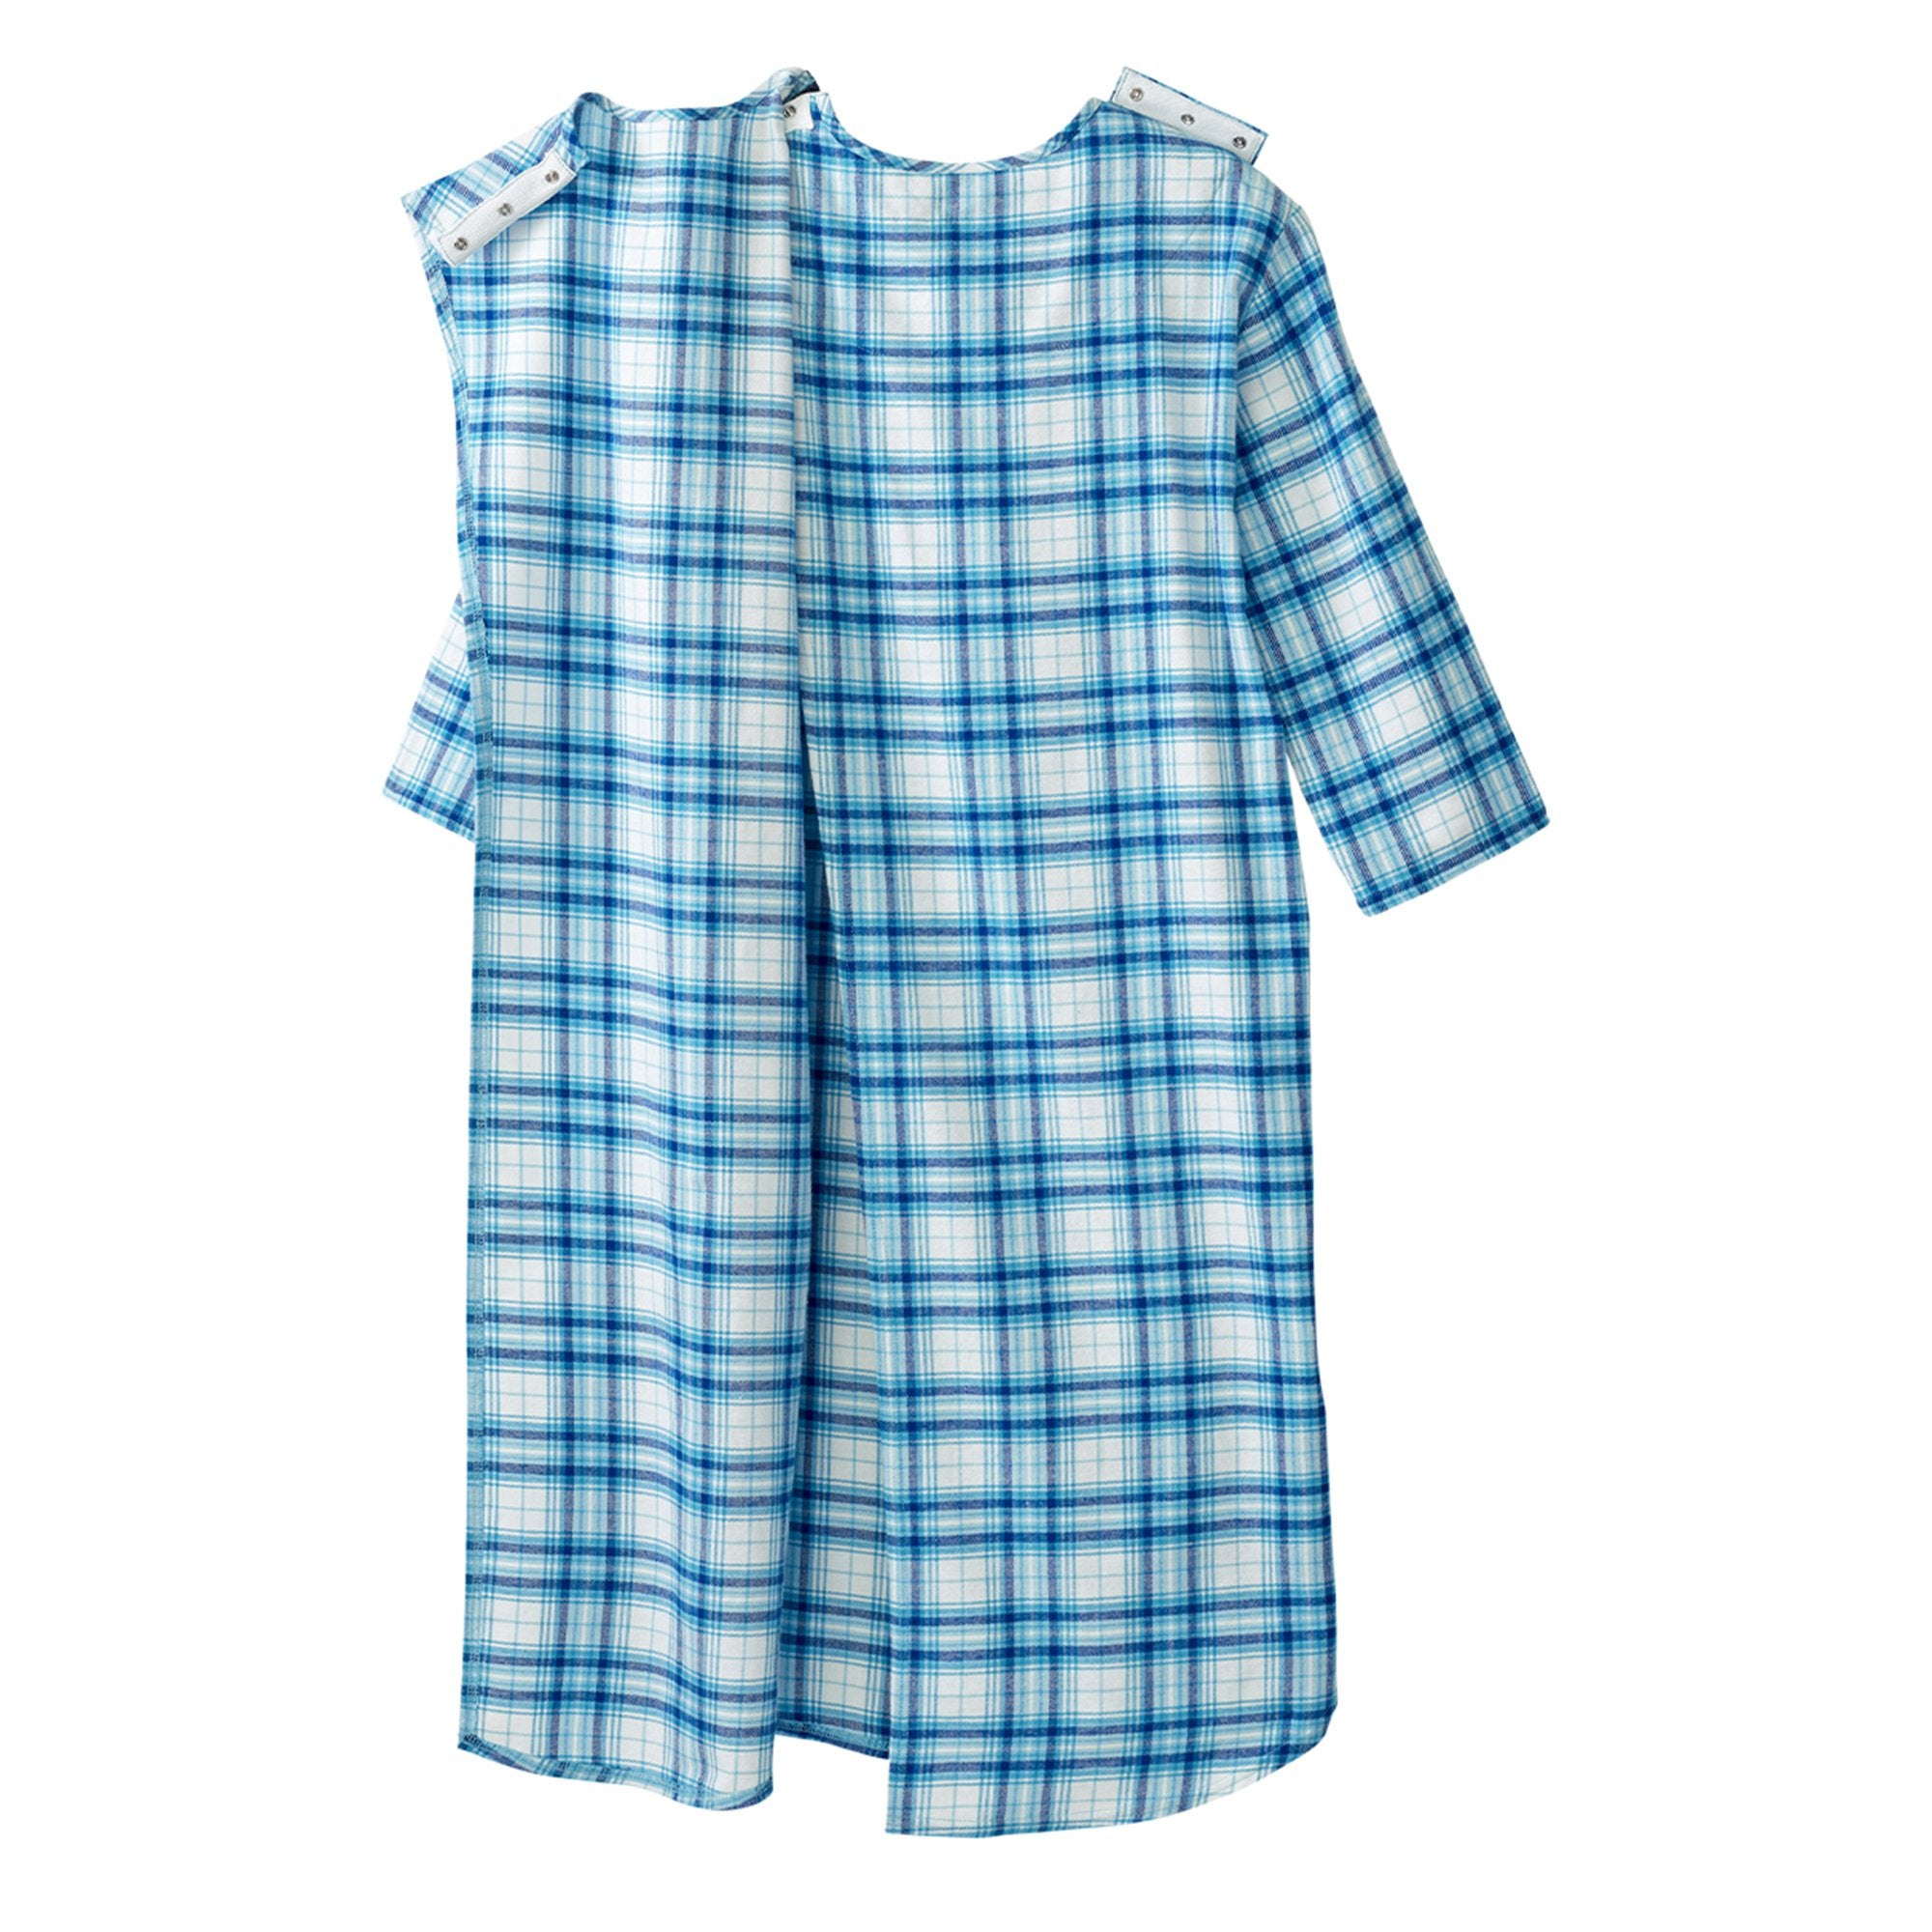 Silverts® Shoulder Snap Patient Exam Gown, 3X-Large, Turquoise Plaid (1 Unit)